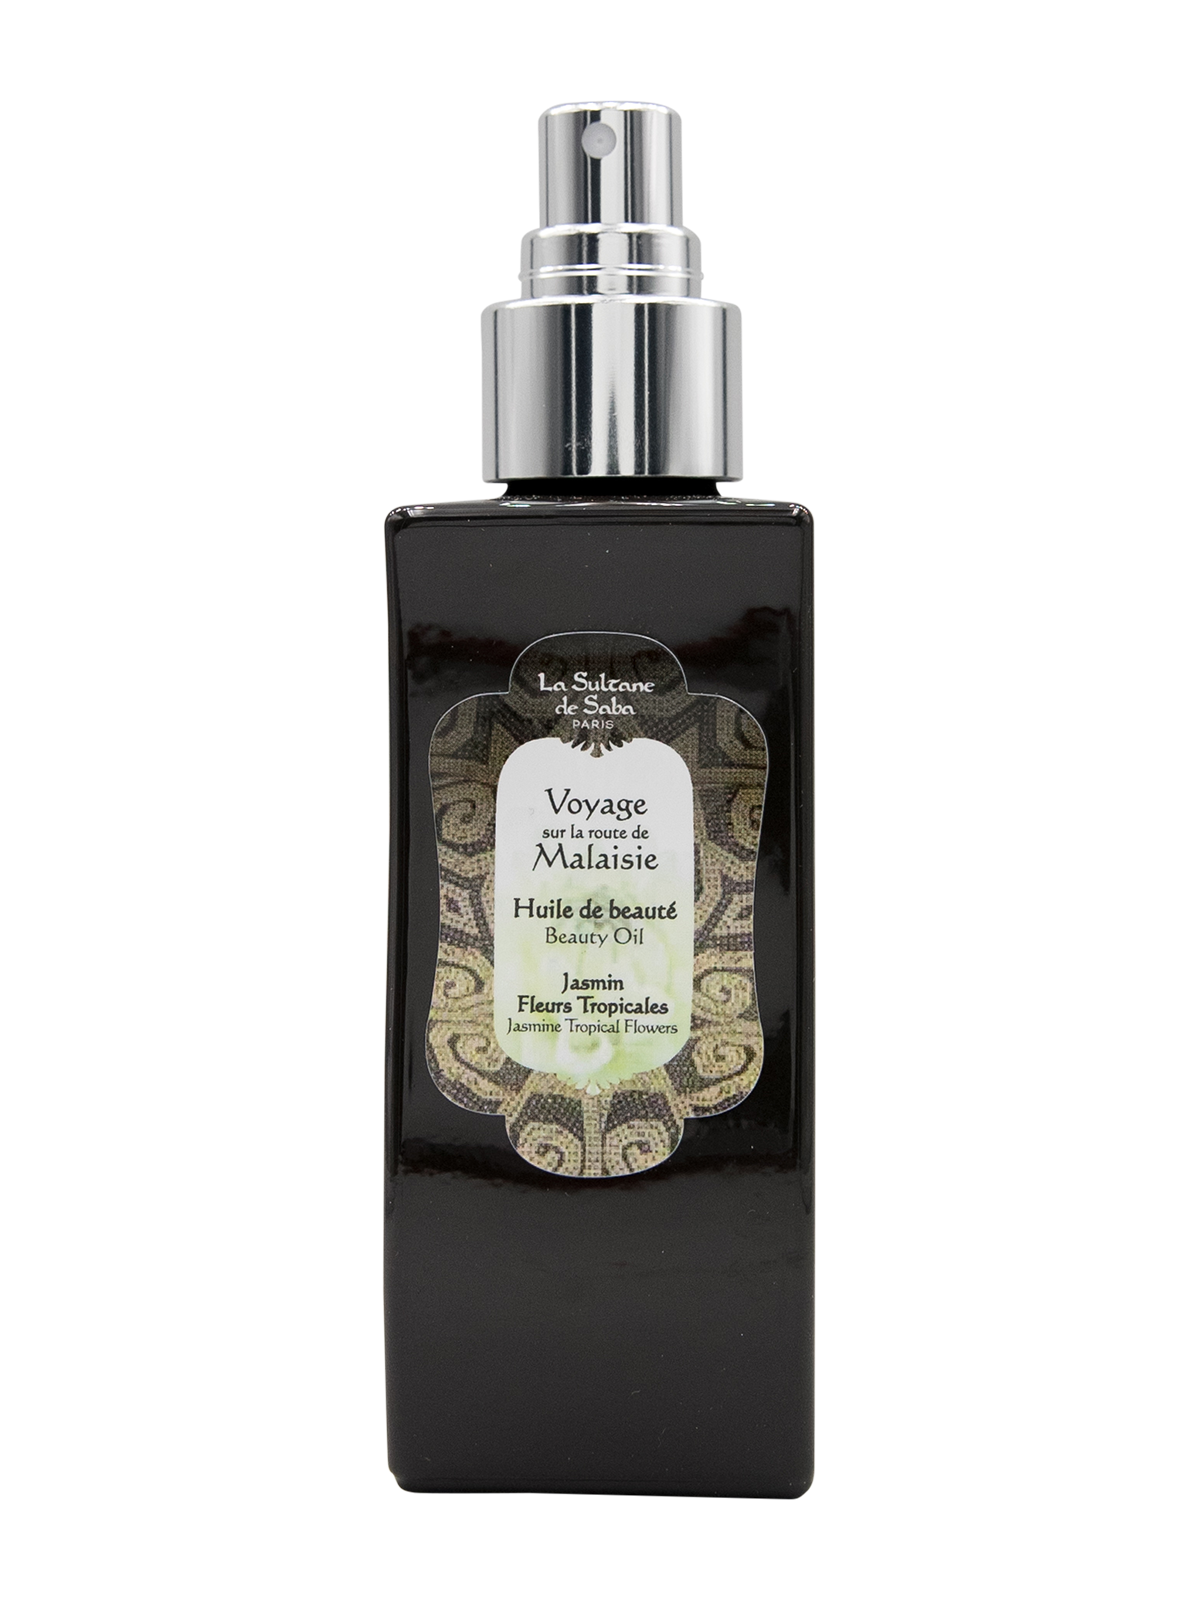 Beauty Oil - Jasmine and Tropical Flowers Fragrance